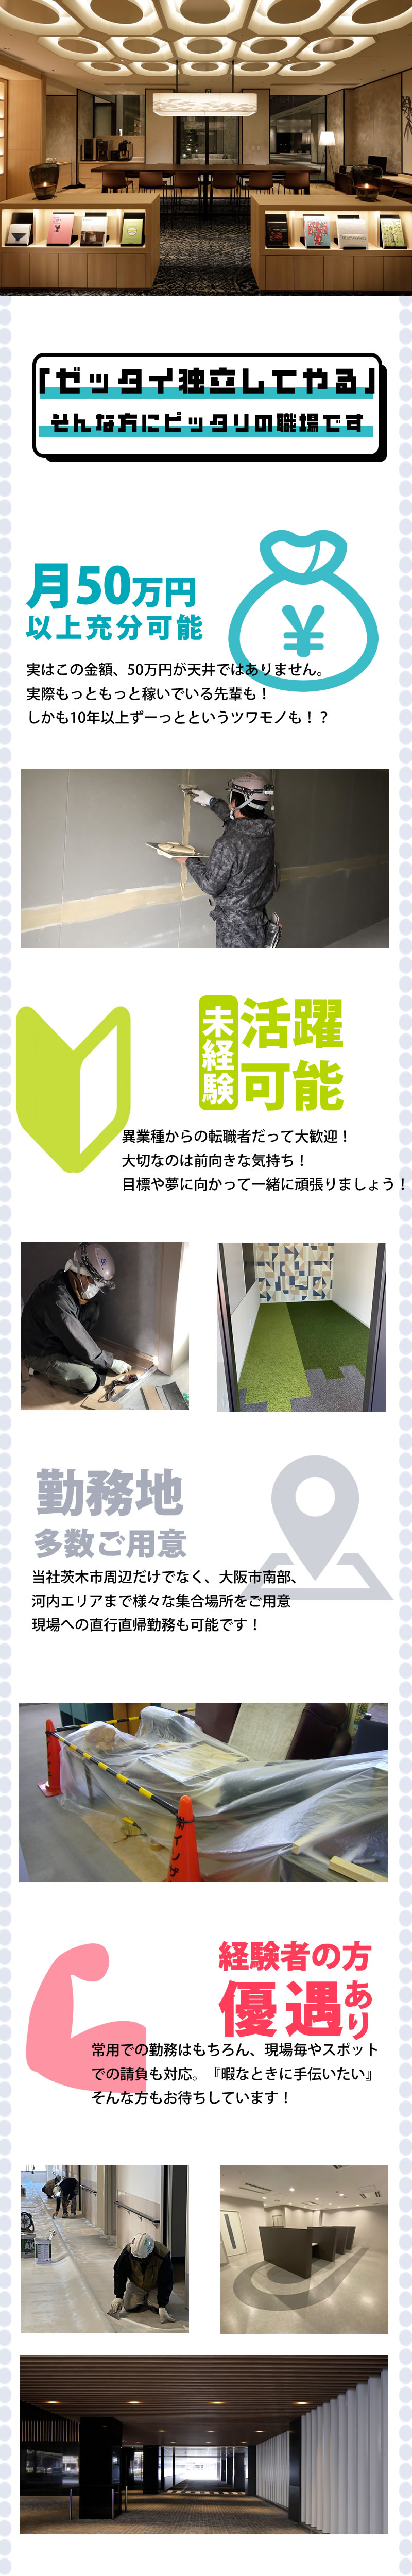 【内装仕上工(クロス・床)求人募集 】-大阪府茨木市 ほか- 将来独立できる技術、習得できます